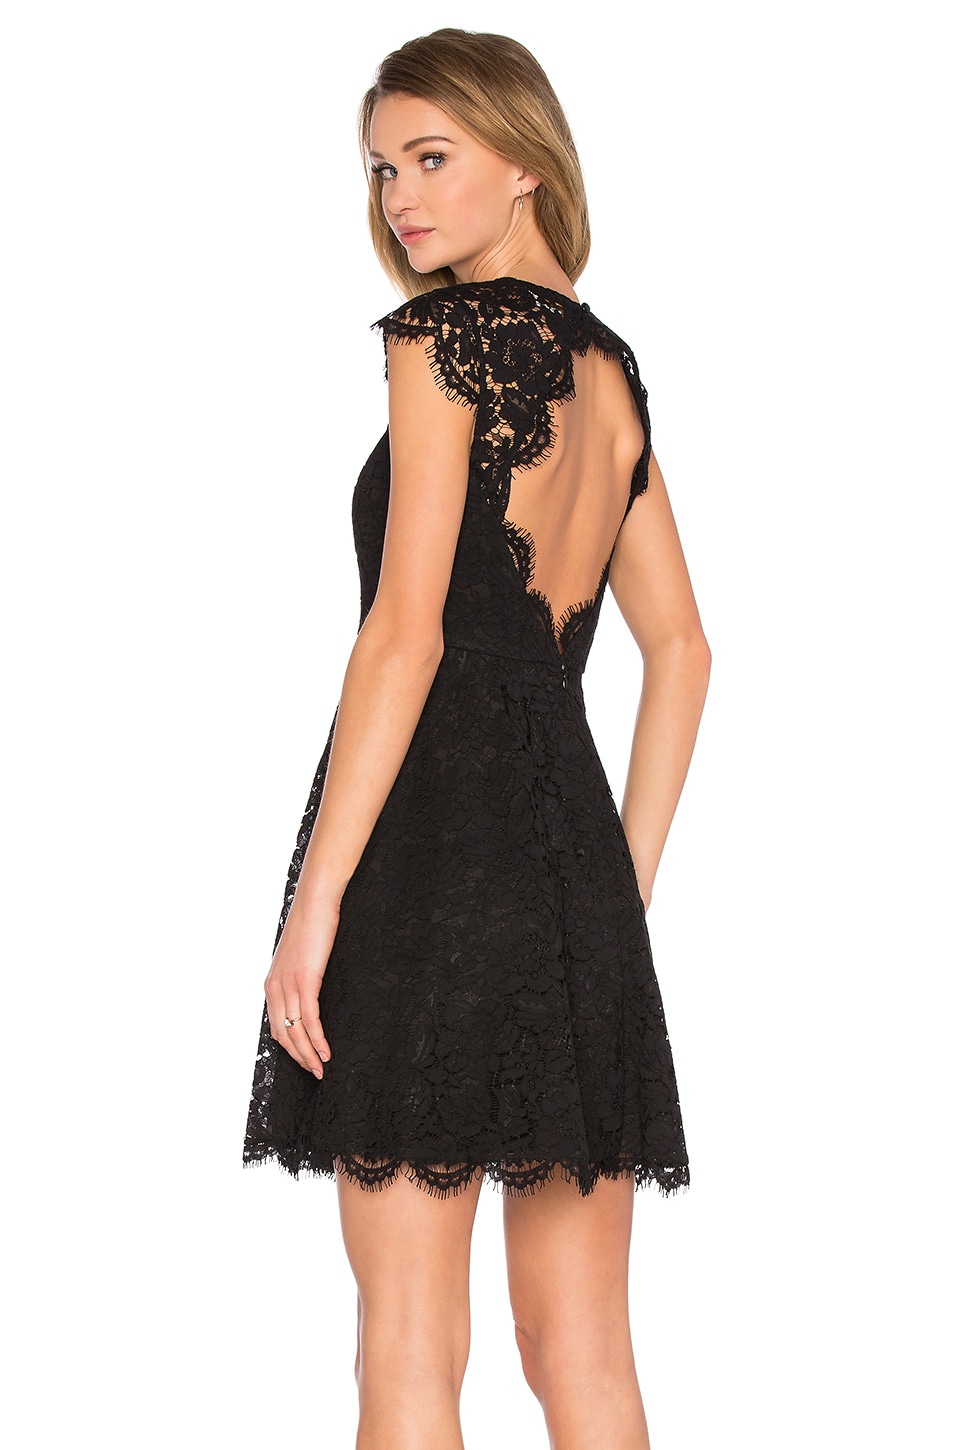 kate spade new york Rose Lace Mini Dress in Black | REVOLVE